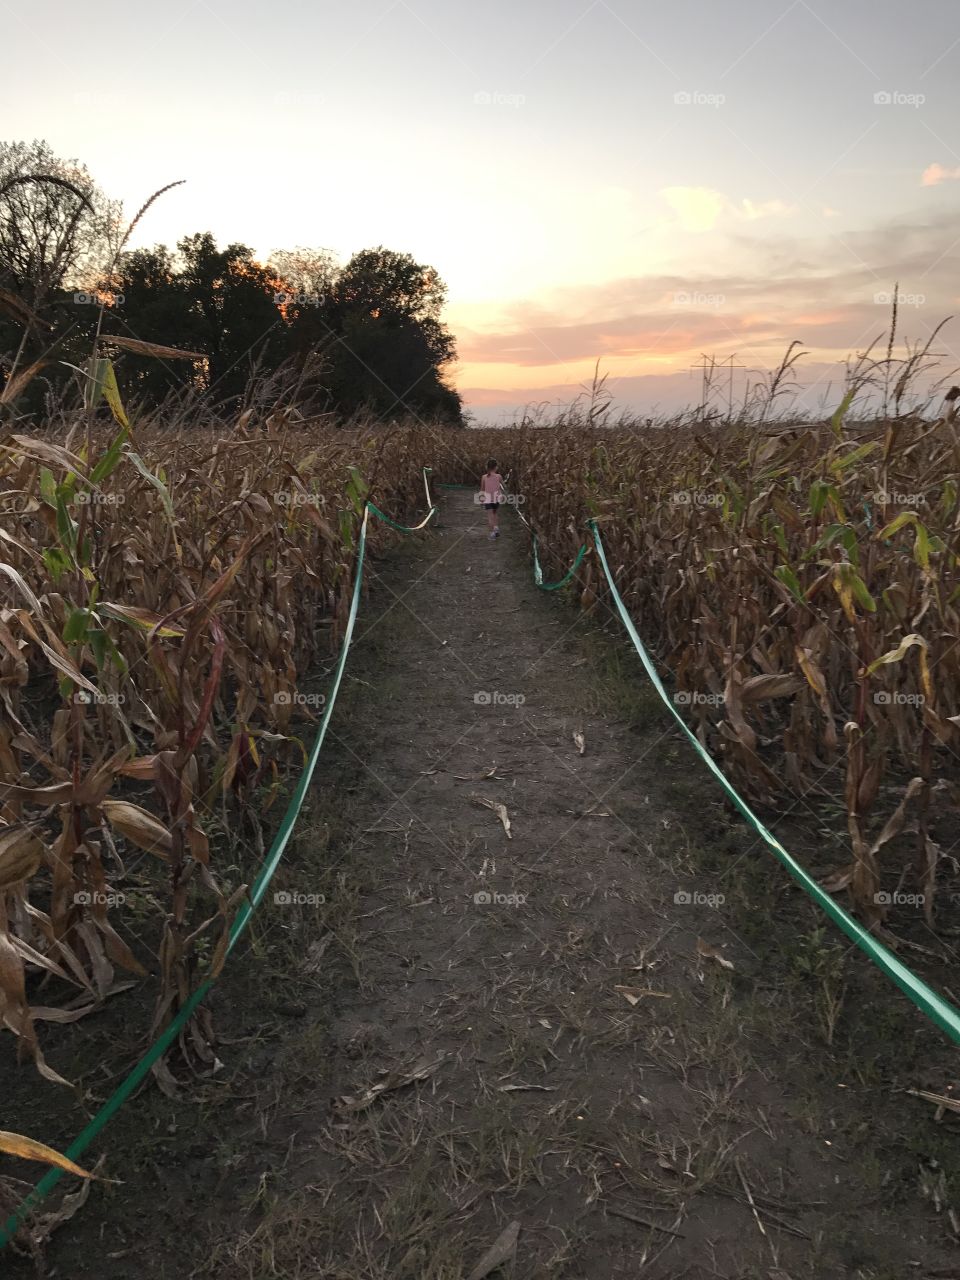 Fun in the corn maze
